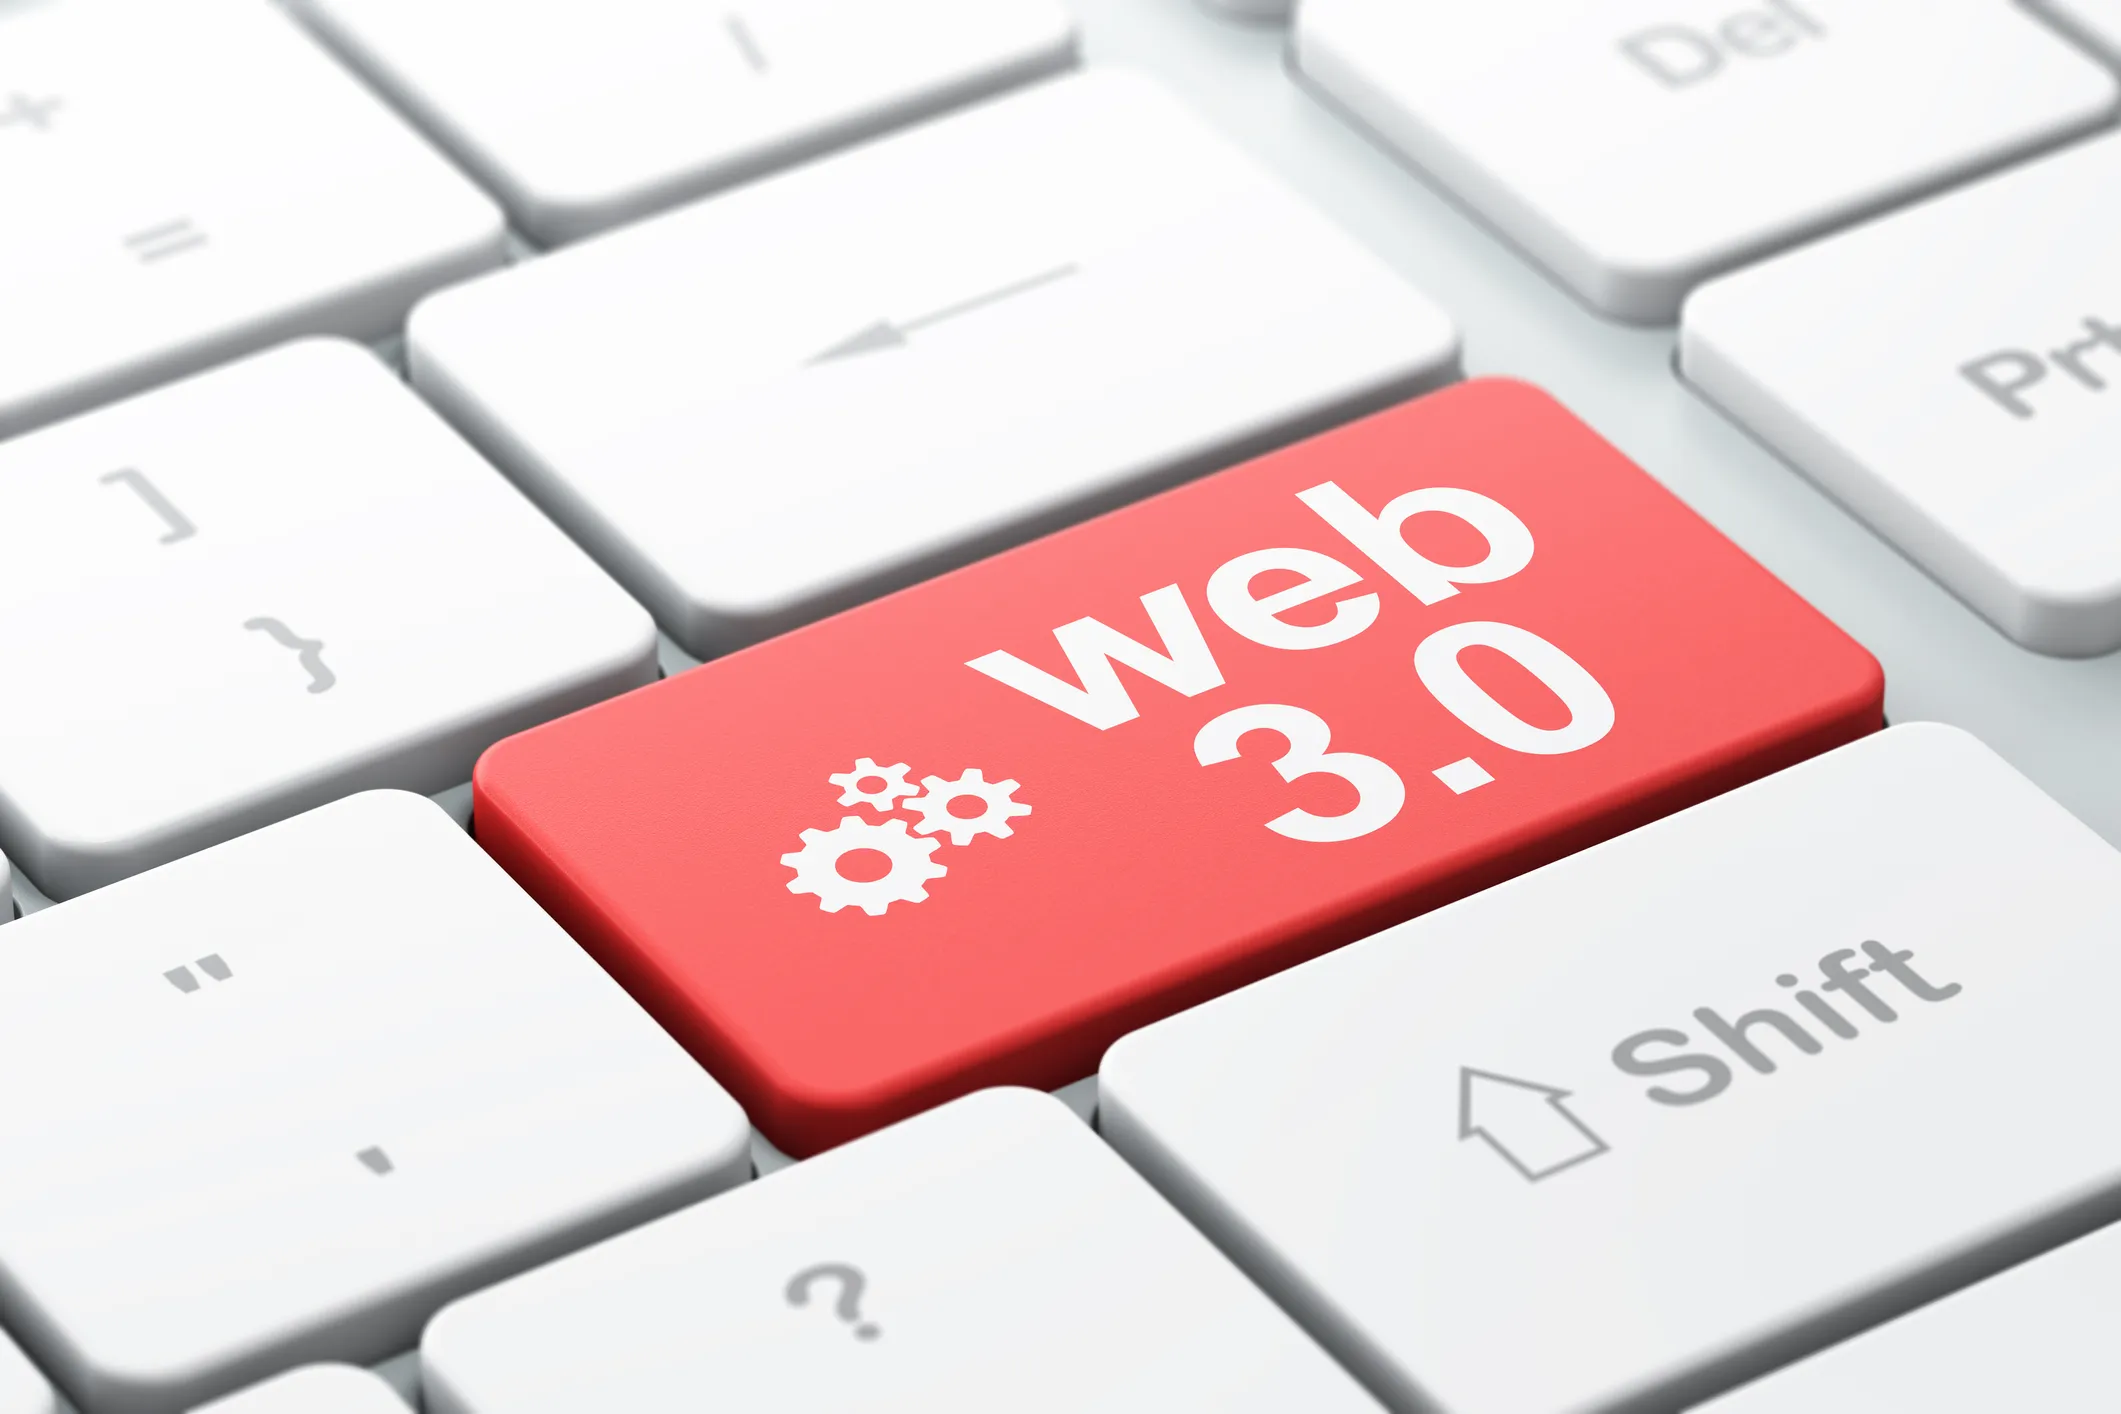 Qu'est-ce que le WEB 3.0 ? La photo représente une partie d'un clavier d'ordinateur avec inscrit une des touche : web 3.0 en blanc sur fond rouge